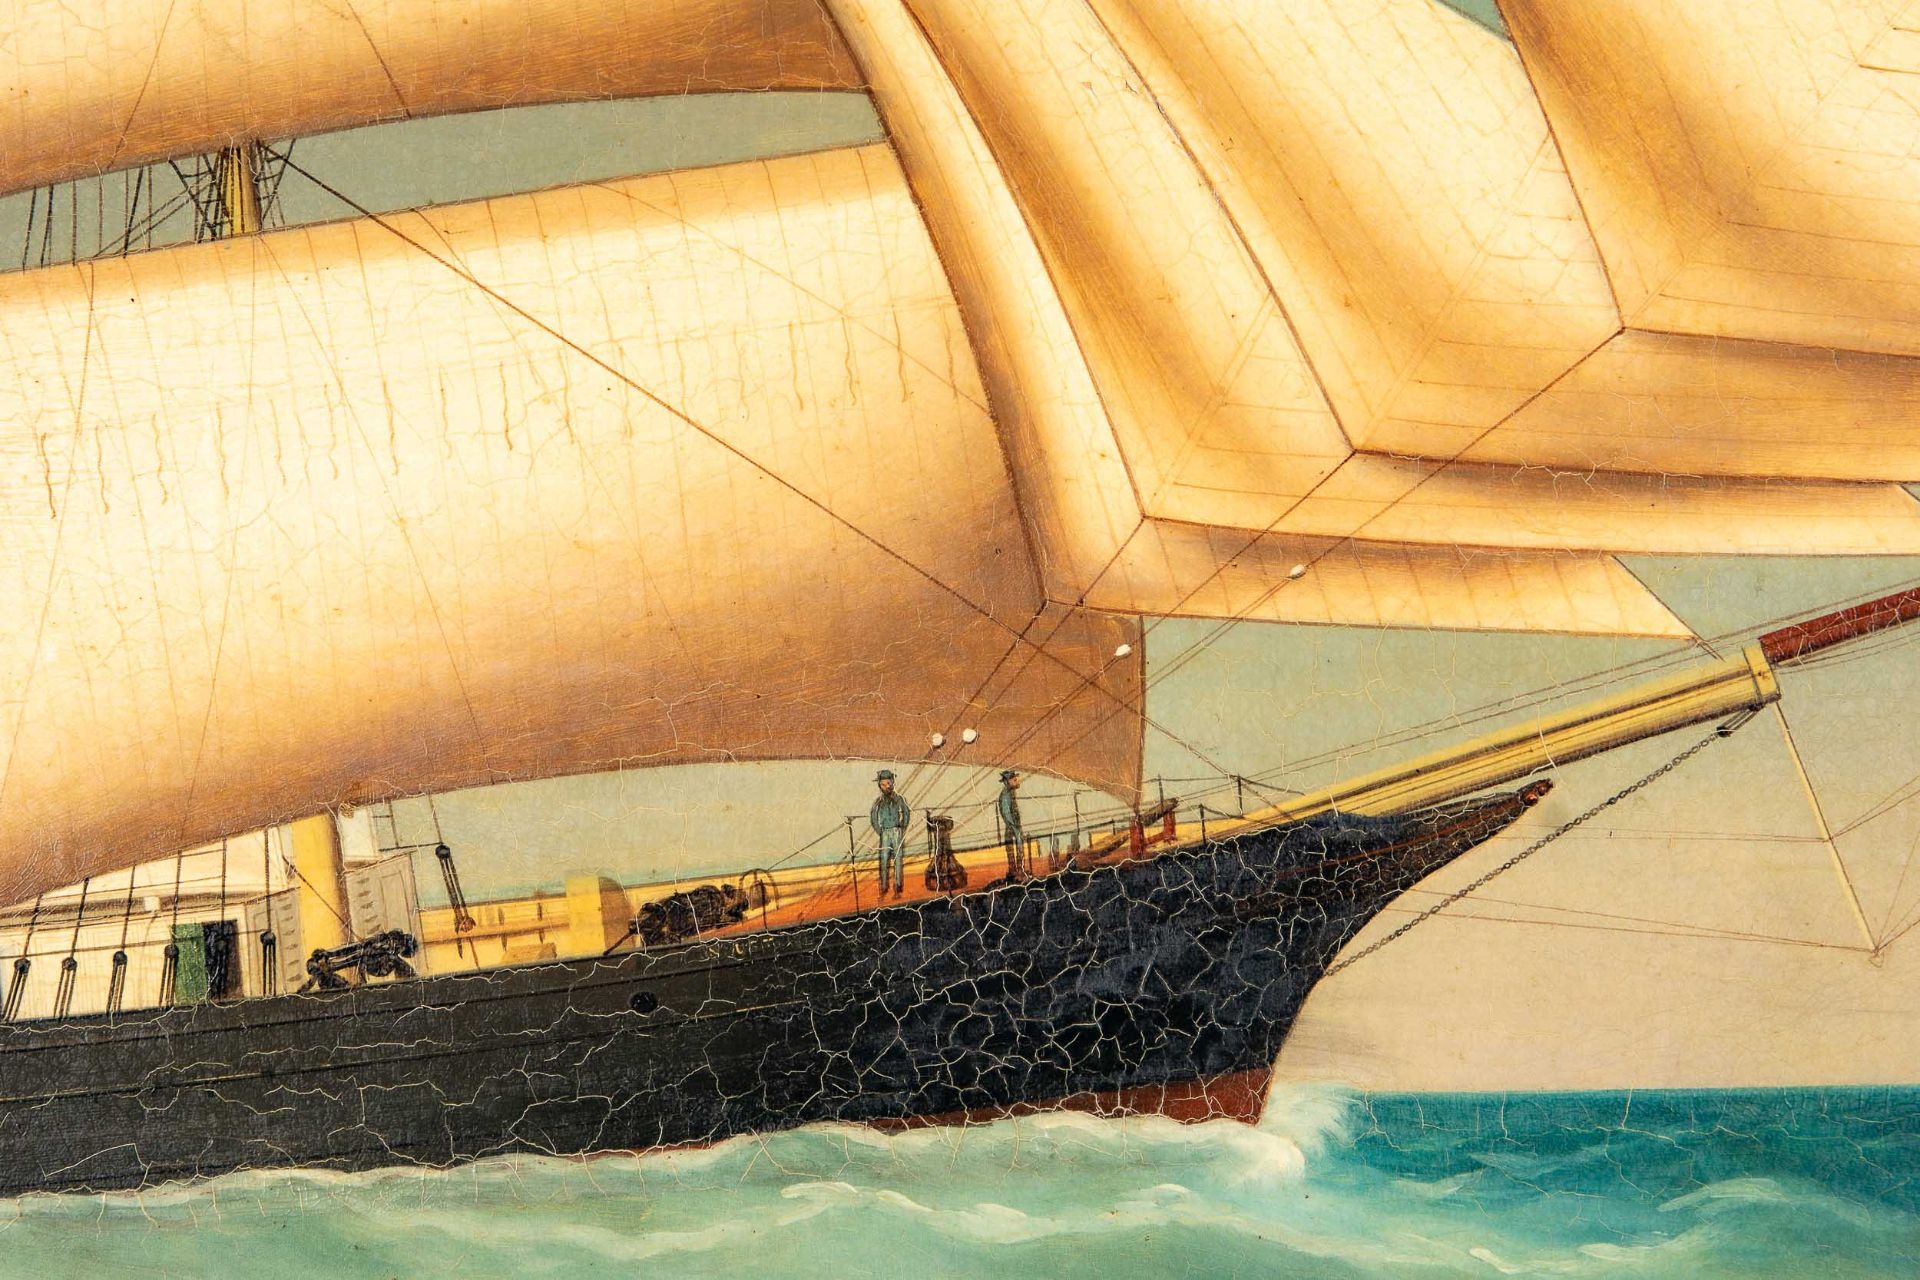 Kapitänsbild des Vollschiffes "Industrie" (1872 in Holland gebaut), qualitativ hochwertiges Gemälde - Image 7 of 24